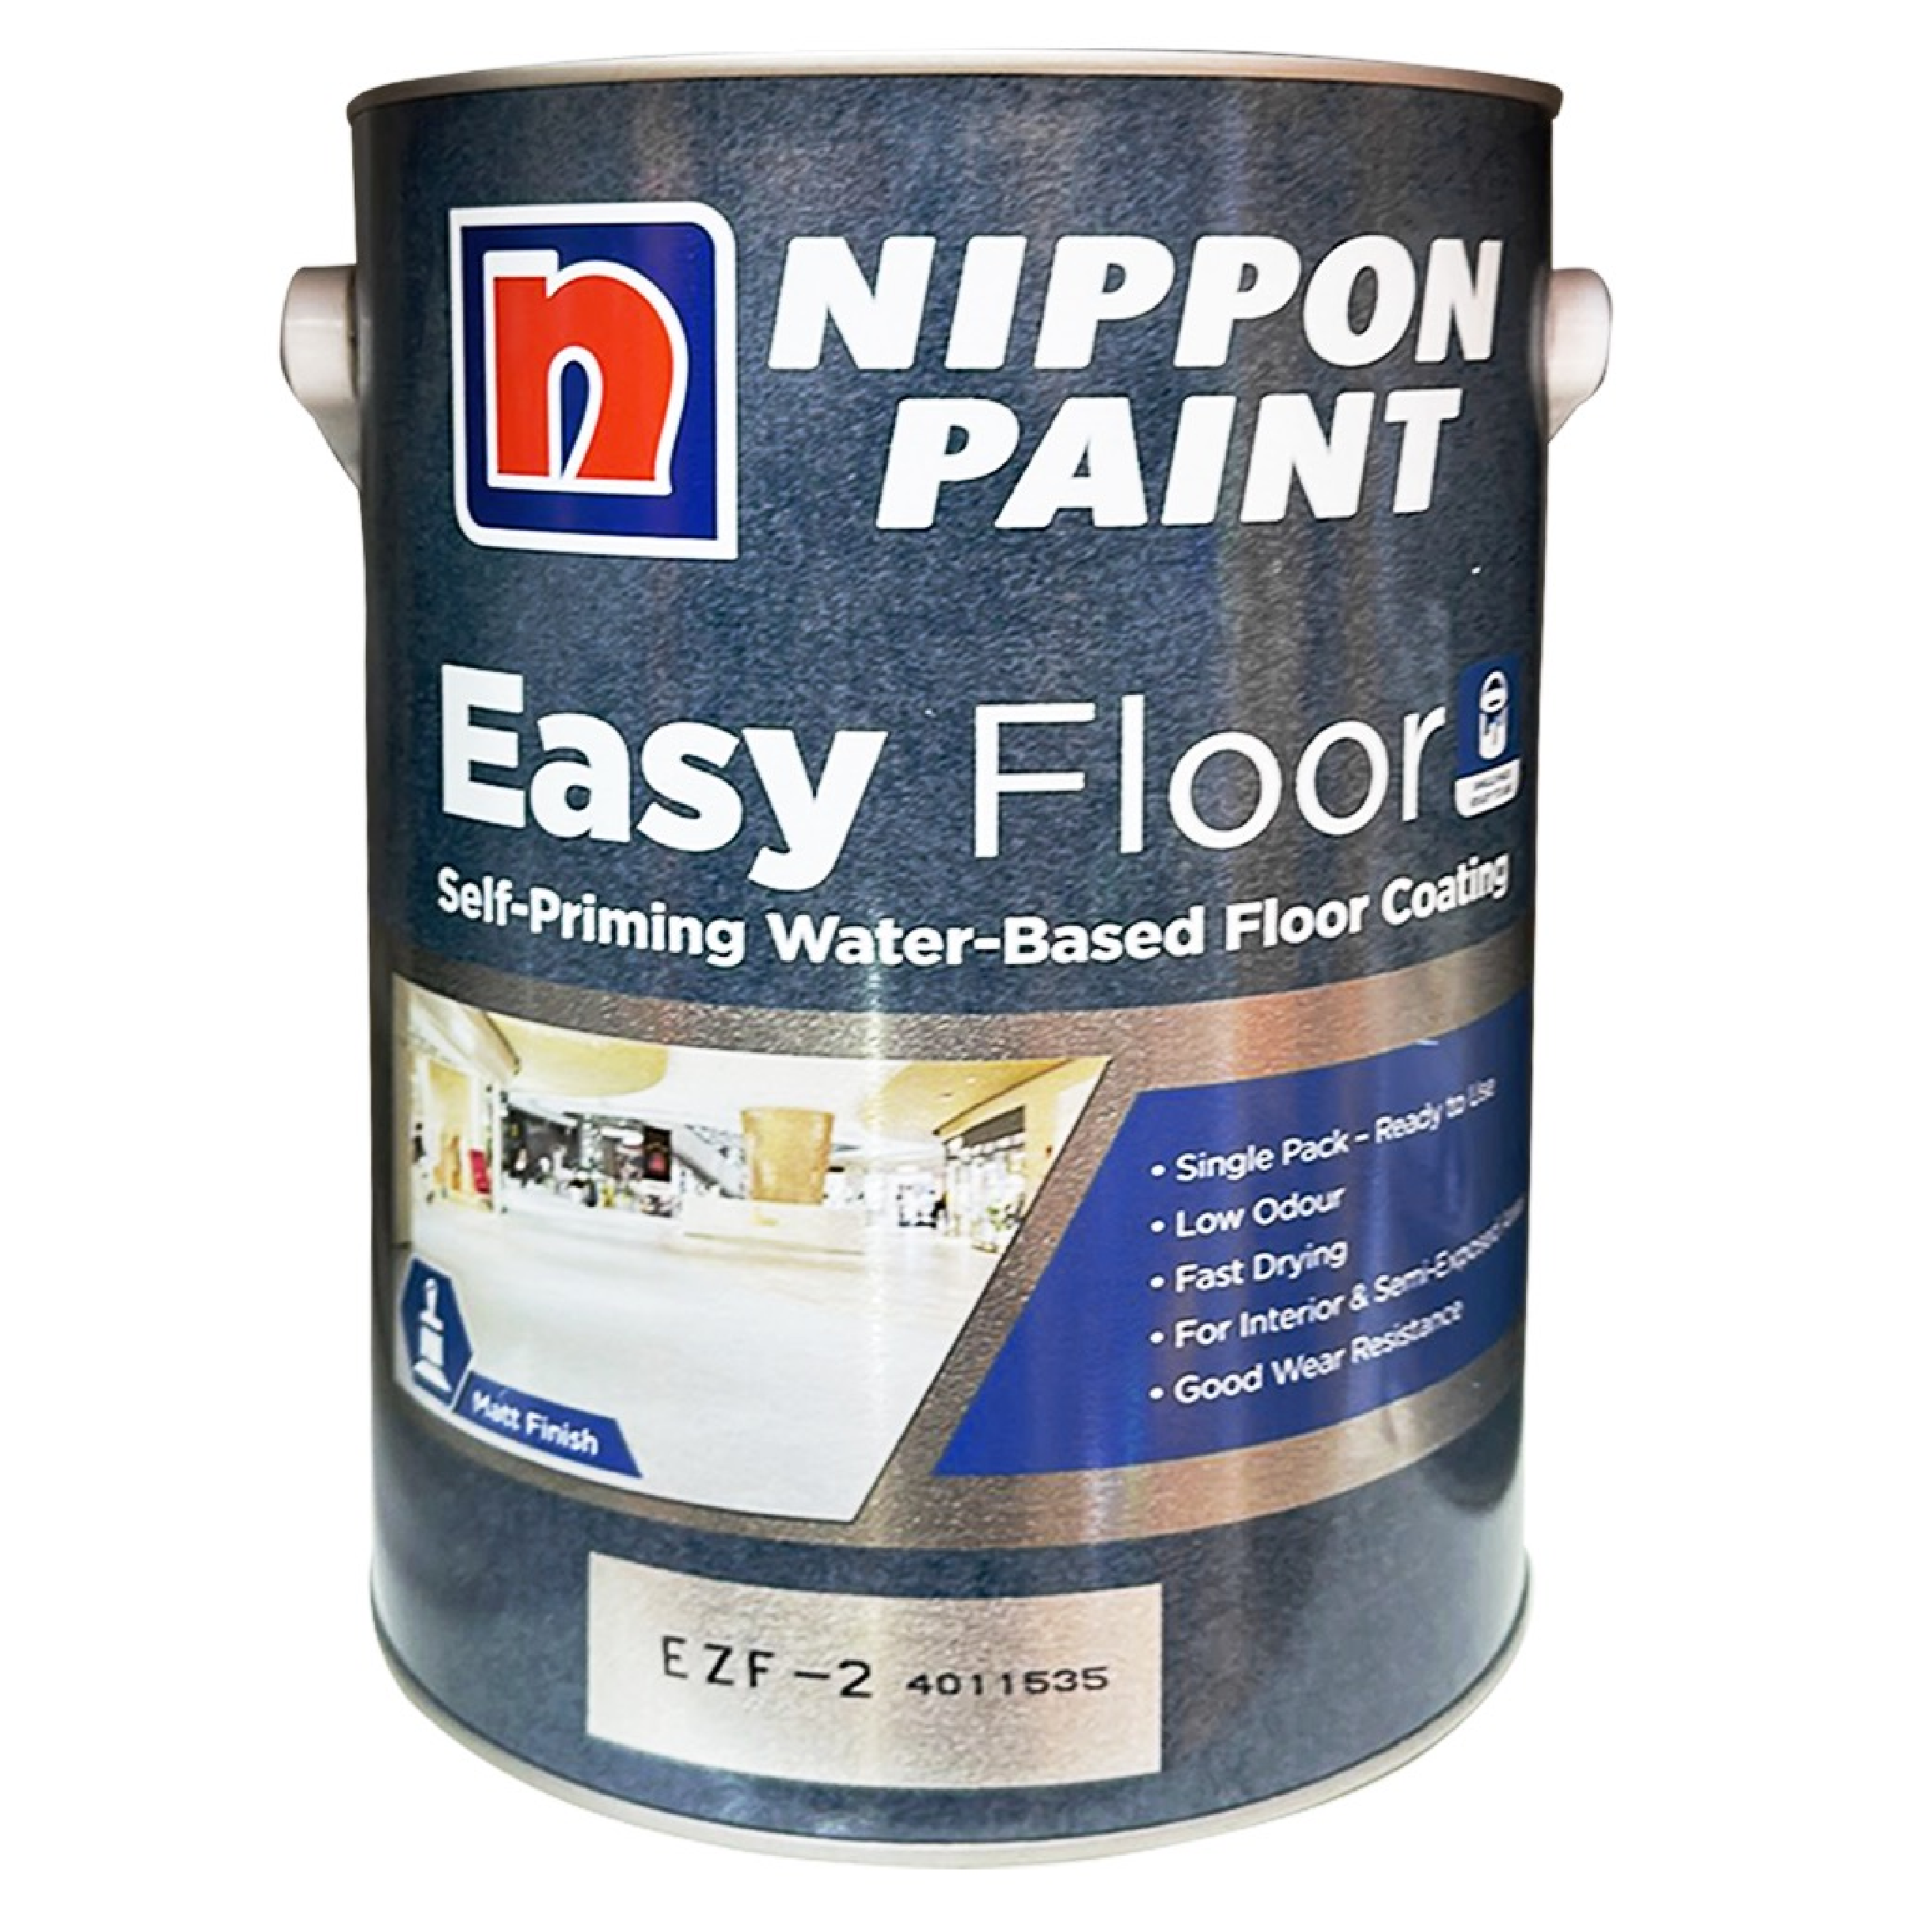 Nippon Paint EASY FLOOR SINGLE PACK Self Priming Water-Based Floor Coating 5L